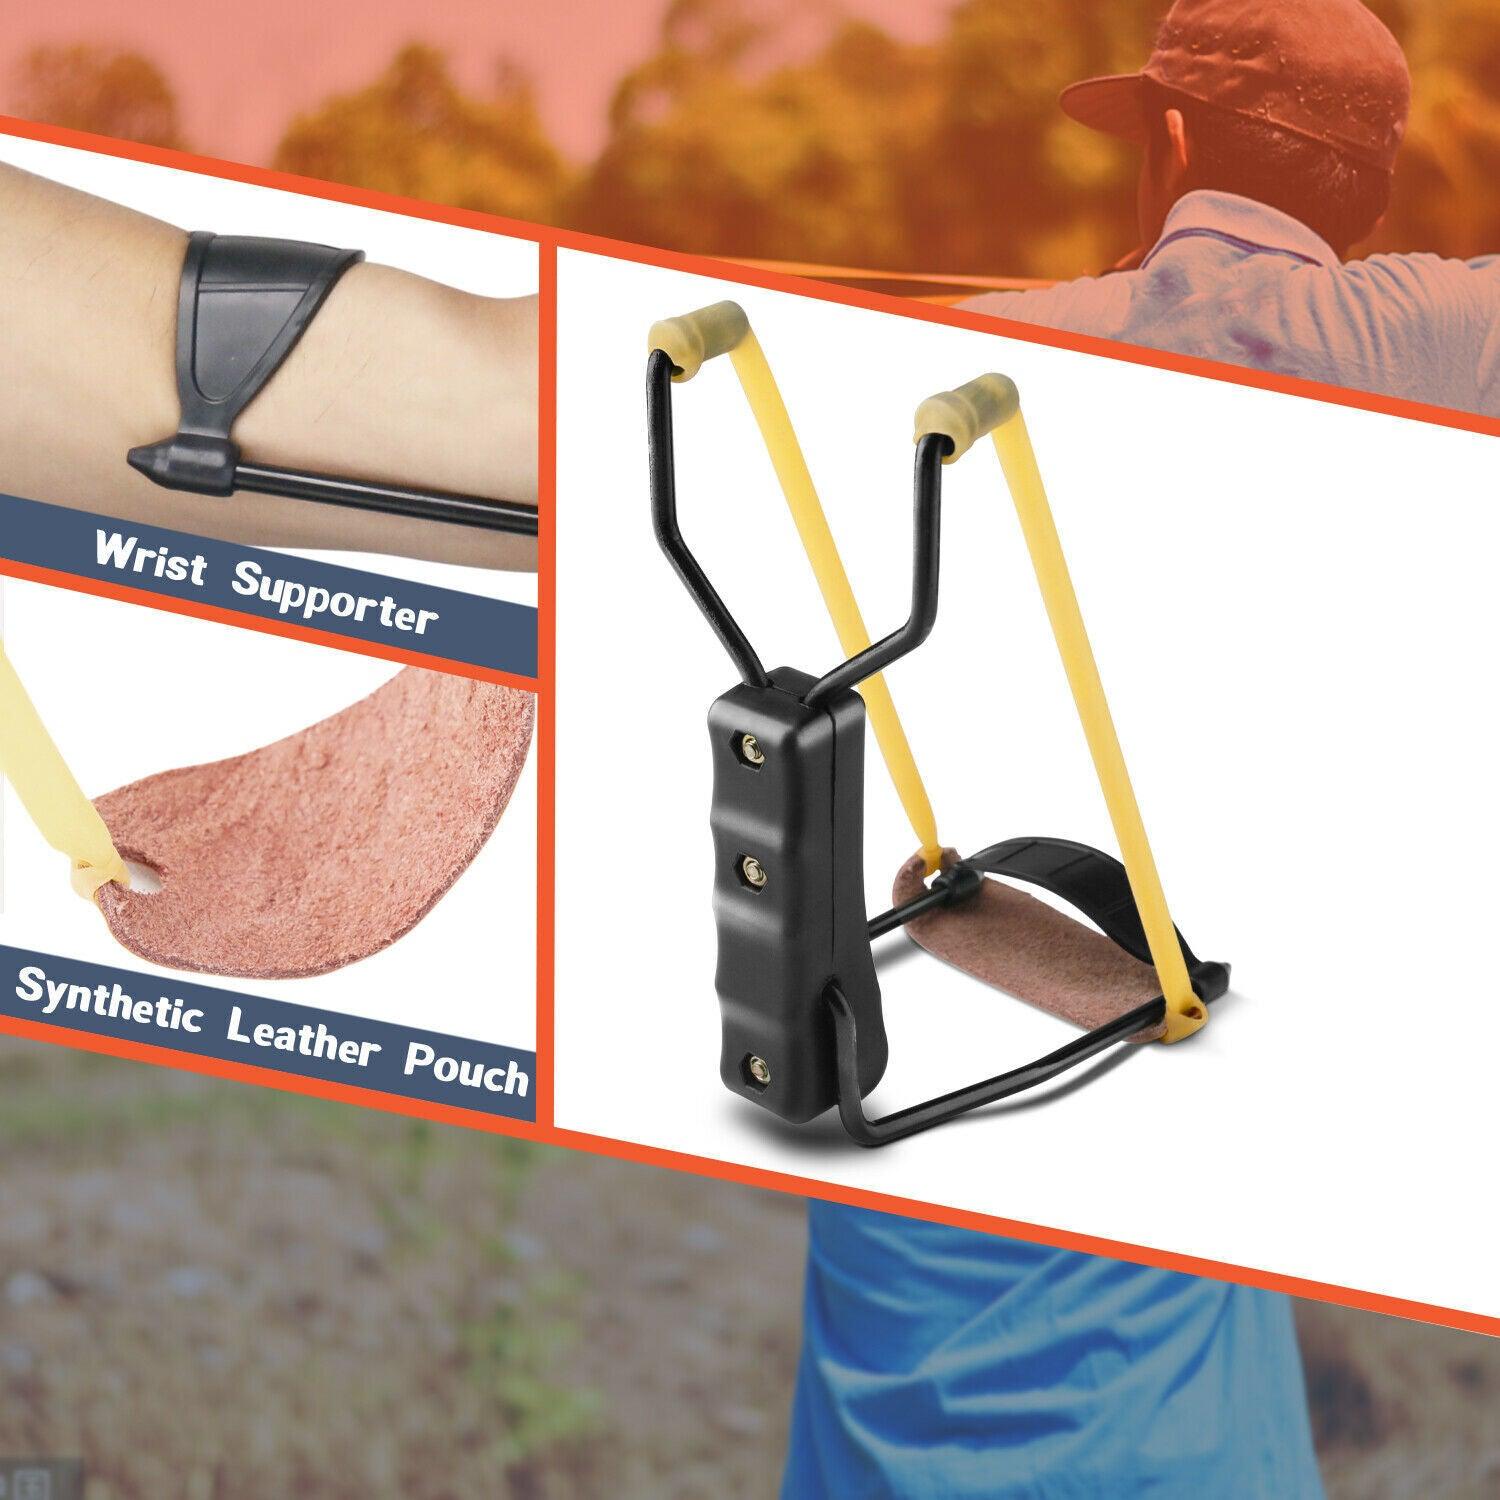 Compact Folding Slingshot Wrist Rocket | Affordable Outdoor Hunting | TrendyAffordables - TrendyAffordables - 5